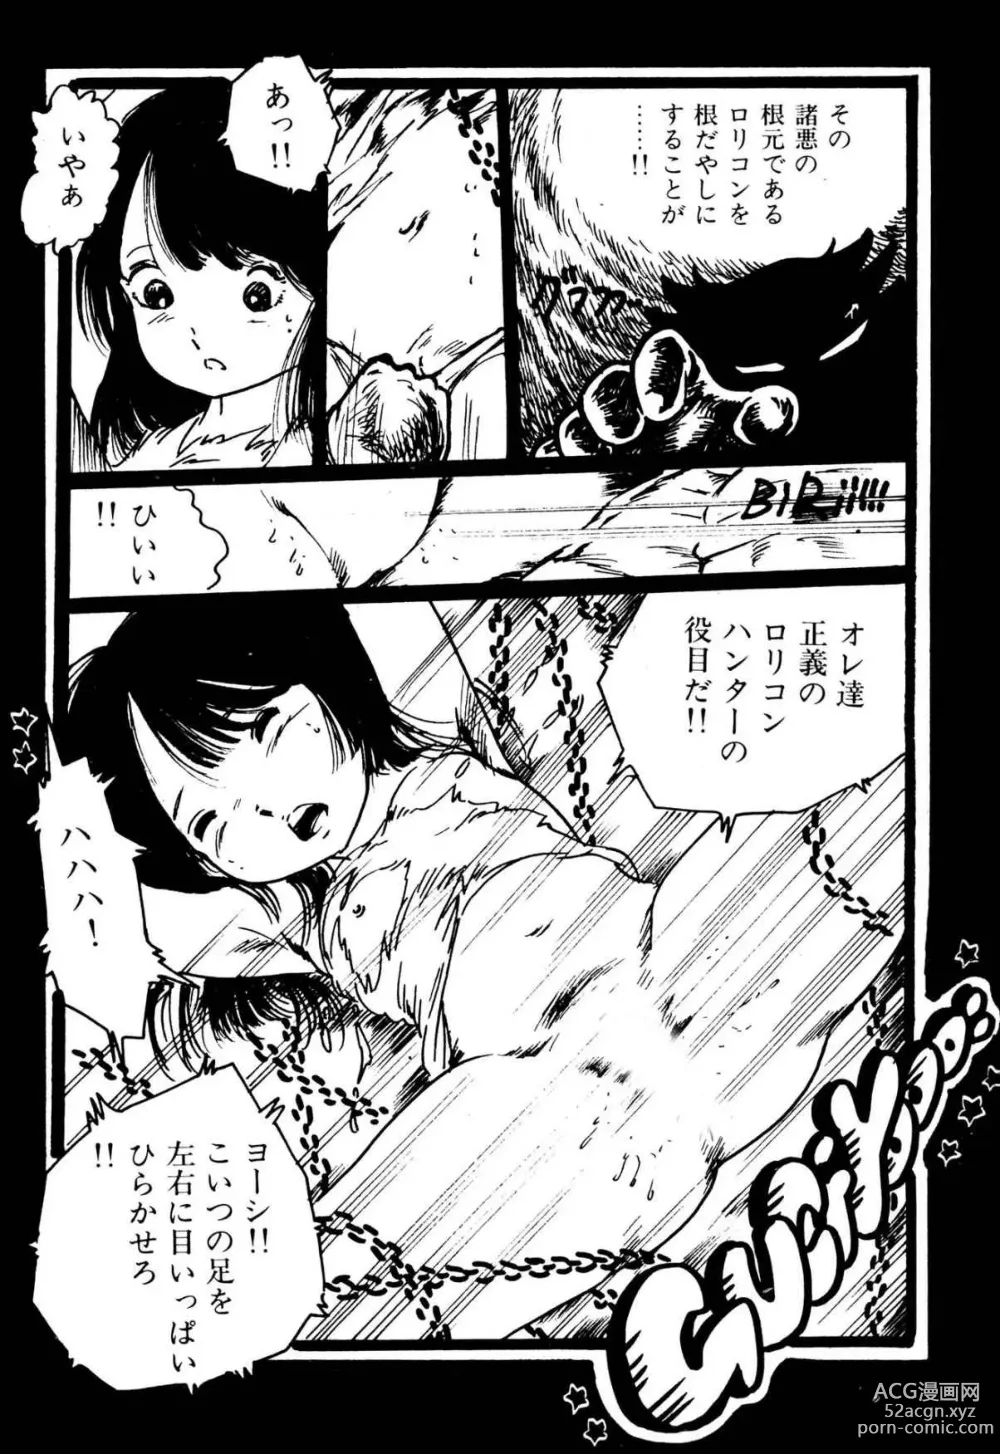 Page 196 of manga Koisuru Yousei